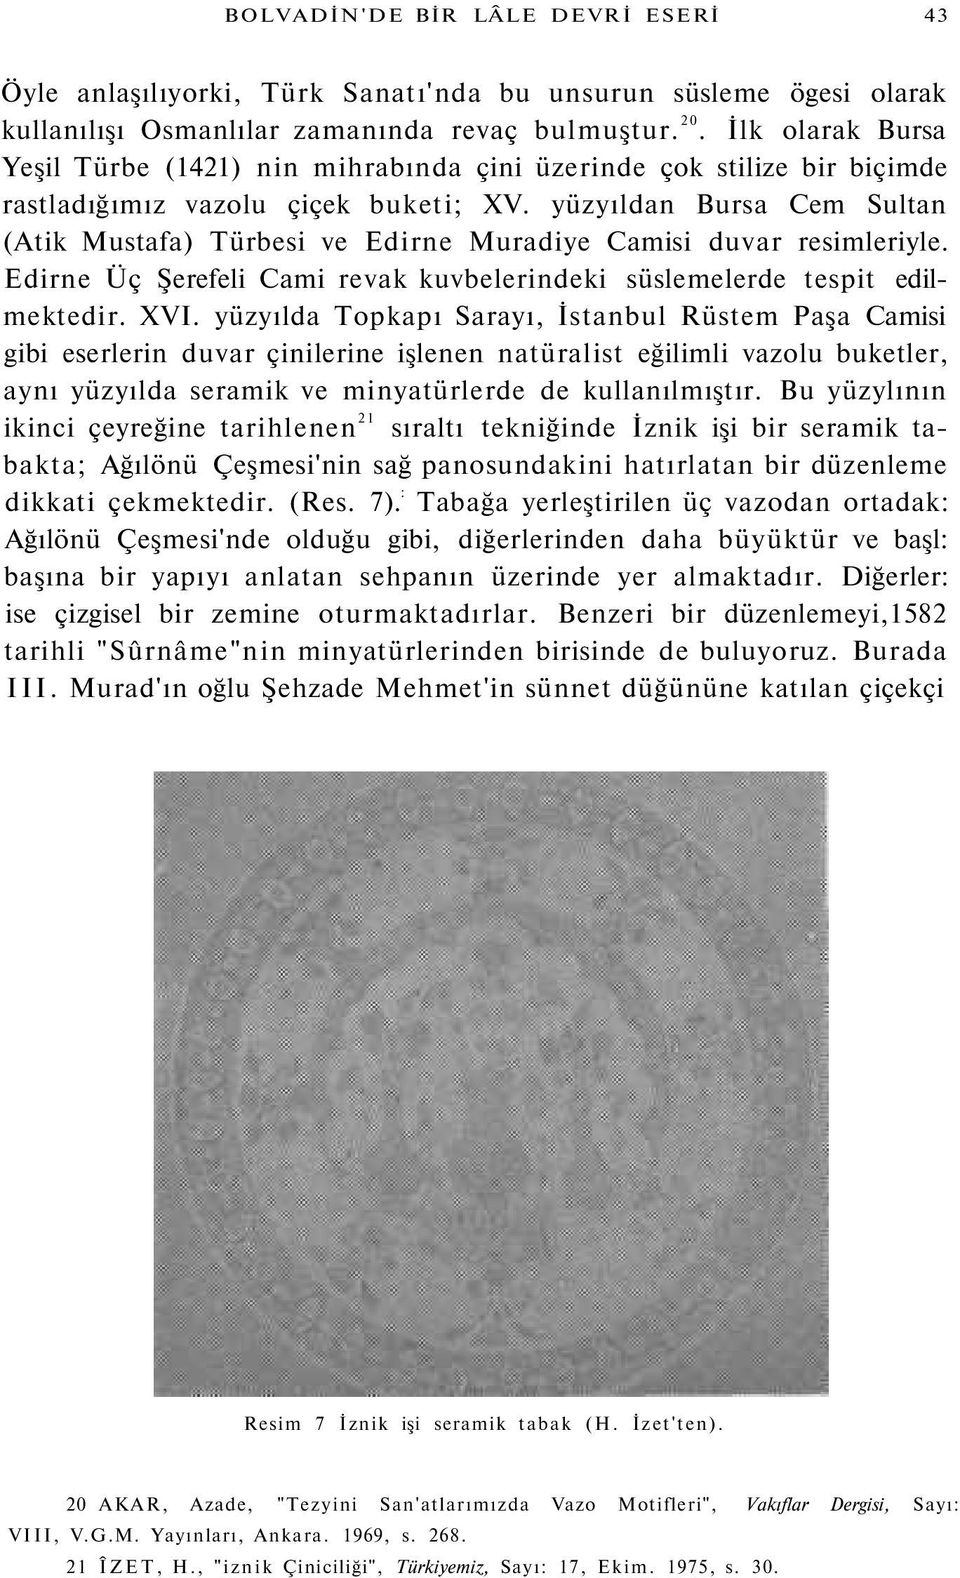 yüzyıldan Bursa Cem Sultan (Atik Mustafa) Türbesi ve Edirne Muradiye Camisi duvar resimleriyle. Edirne Üç Şerefeli Cami revak kuvbelerindeki süslemelerde tespit edilmektedir. XVI.